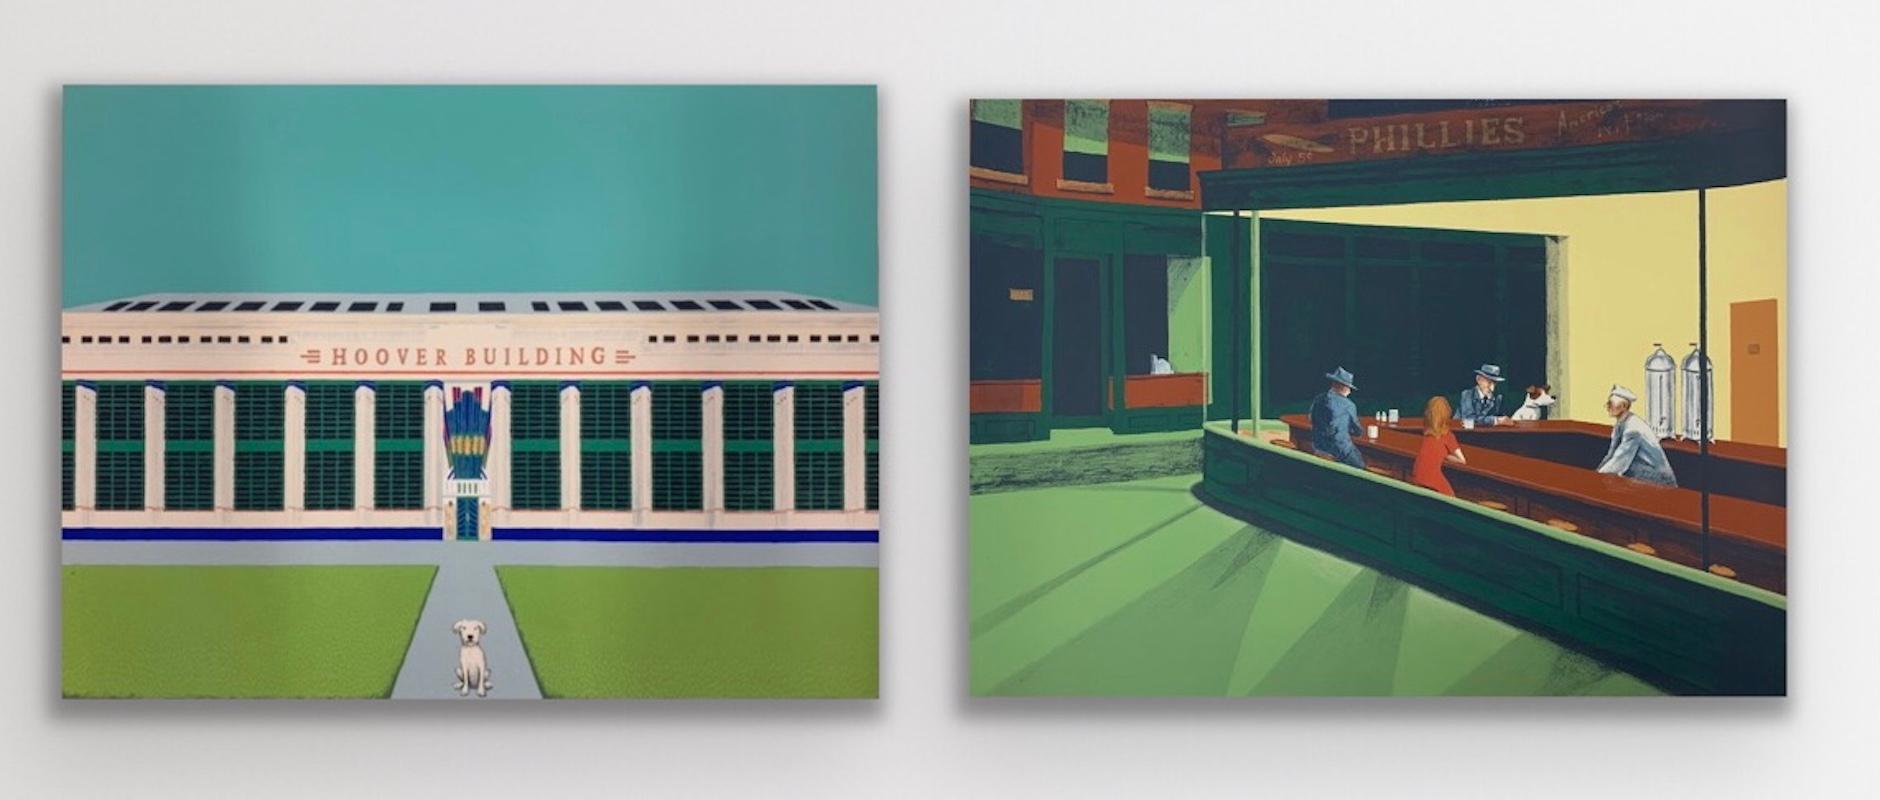 Le chien de Wes Andersons - Hoover Building II par Mychael Barratt [2021]
édition limitée et signée par l'artiste 
Sérigraphie sur papier
Edition numéro 1
Taille de l'image : H:49,5 cm x L:66 cm
Taille complète de l'œuvre non encadrée : H:68 cm x